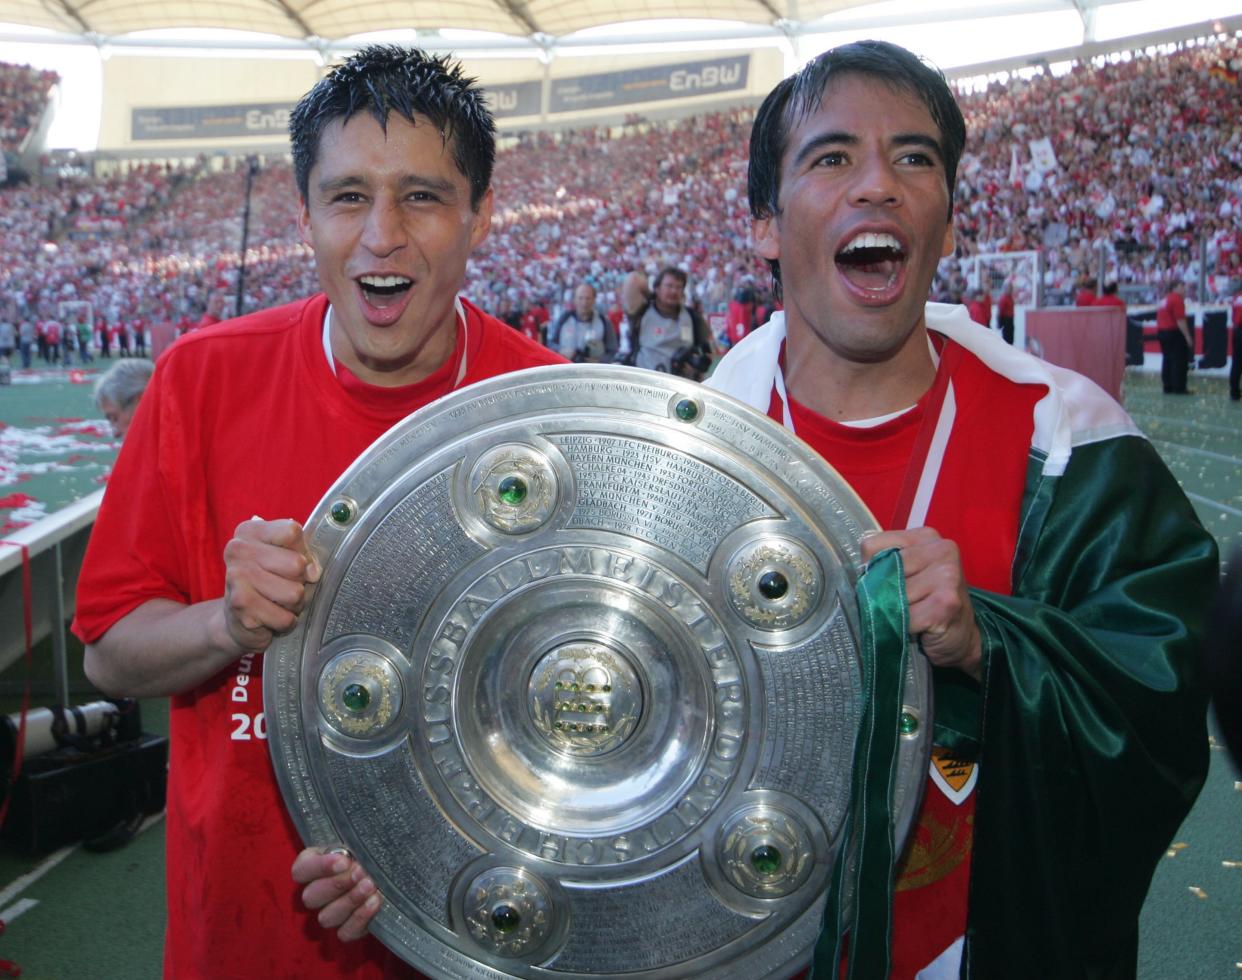 Ambos mexicanos consiguieron el campeonato de la Bundesliga en Alemania (Foto de: Team 2 Sportphoto/ullstein bild via Getty Images)